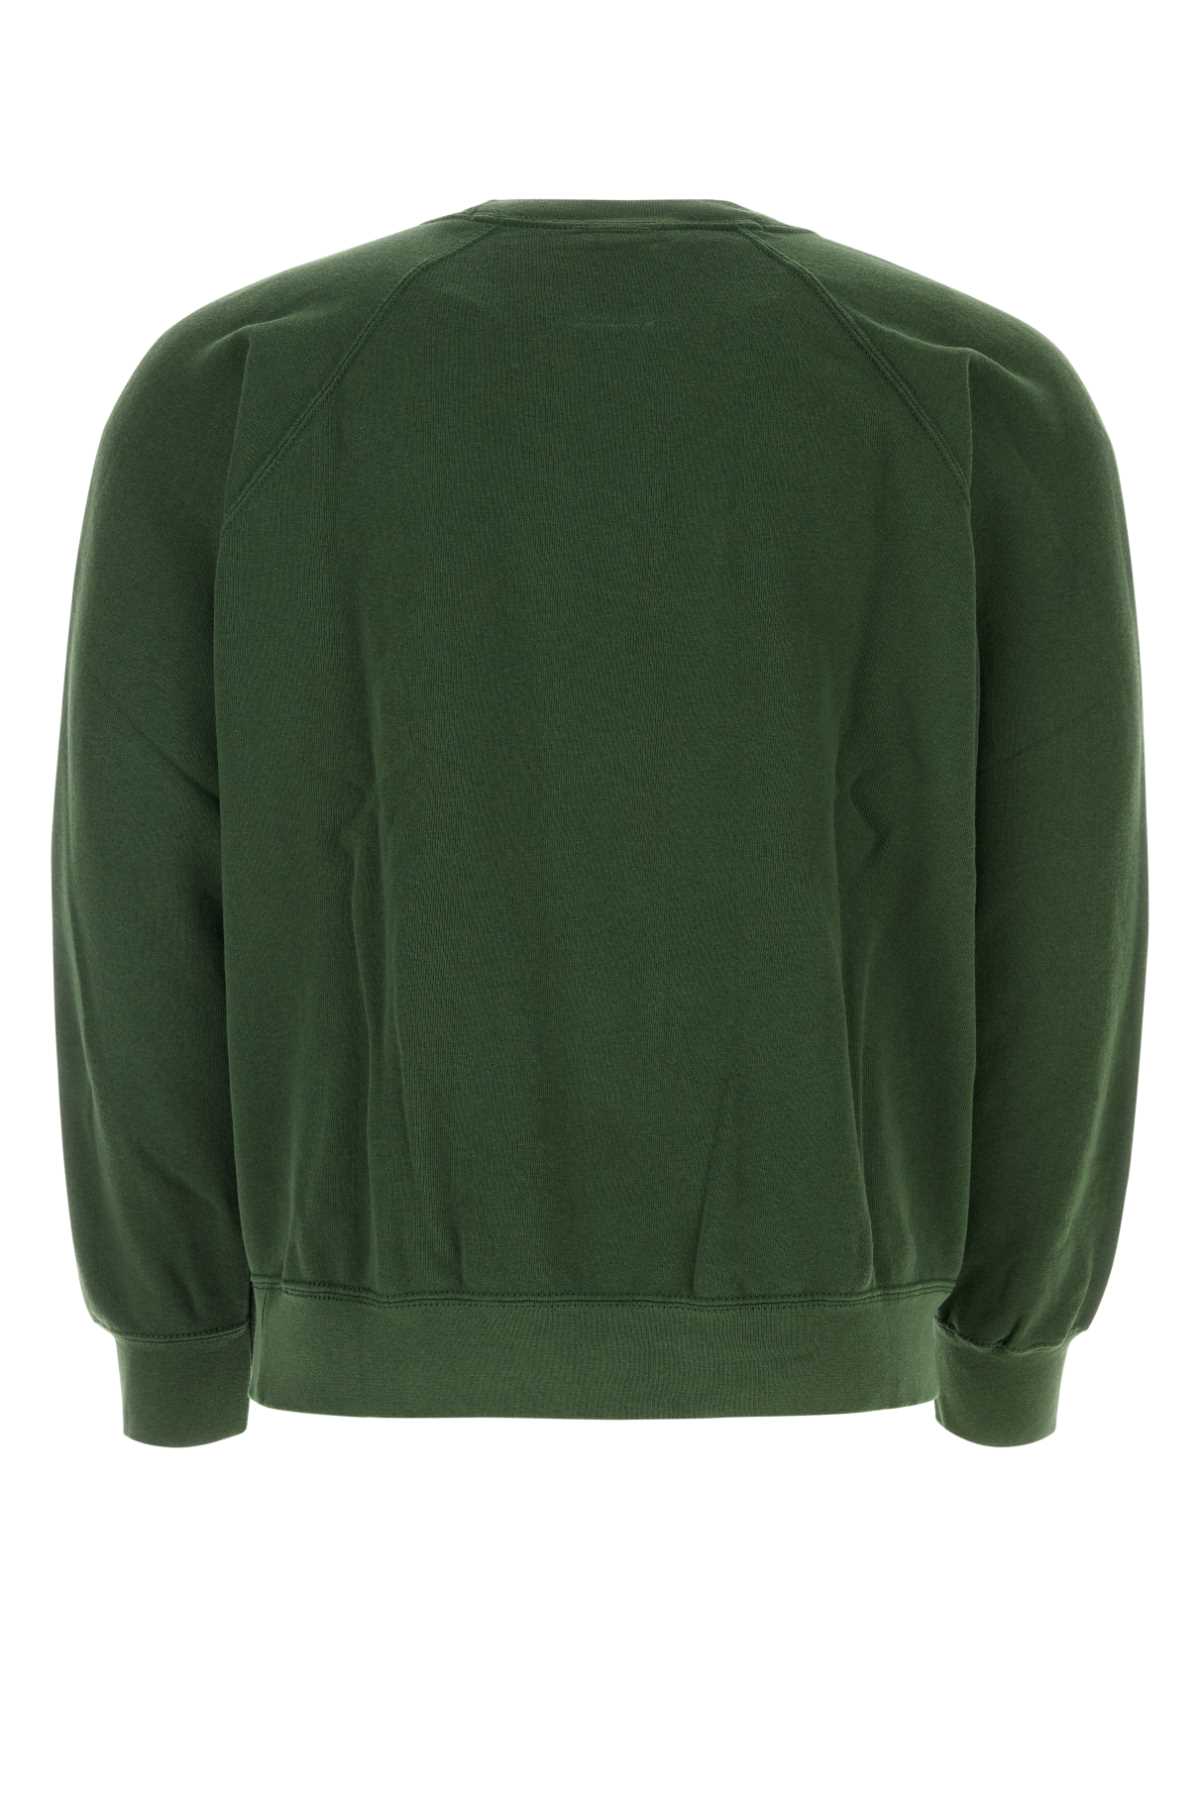 Wild Donkey Buttale Green Cotton Blend Sweatshirt In Wd075